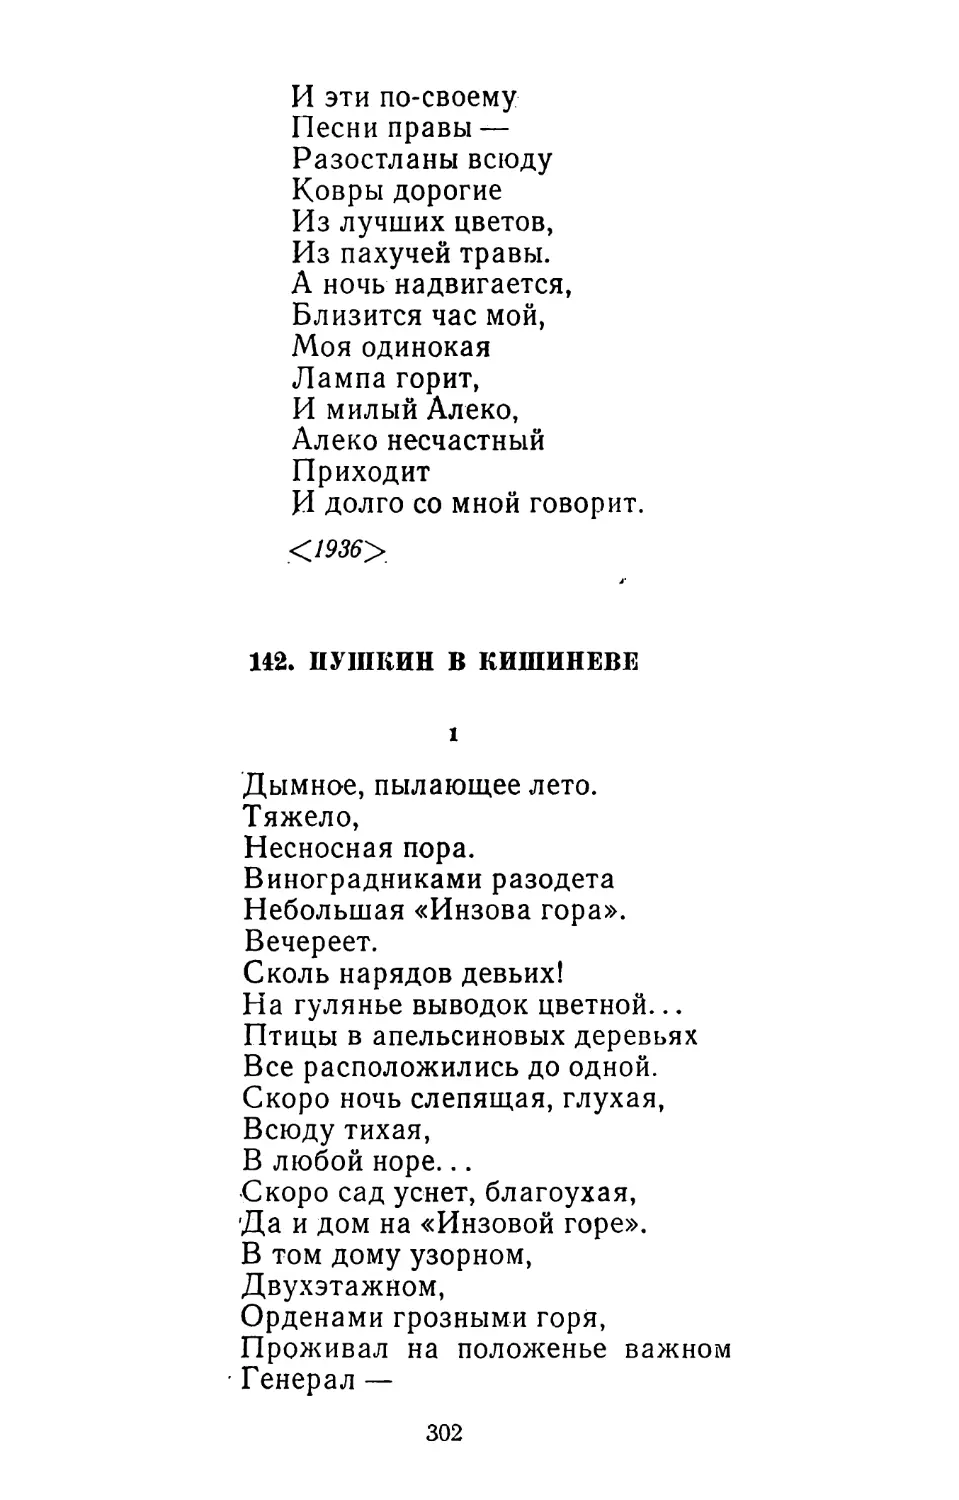 142. Пушкин в Кишиневе